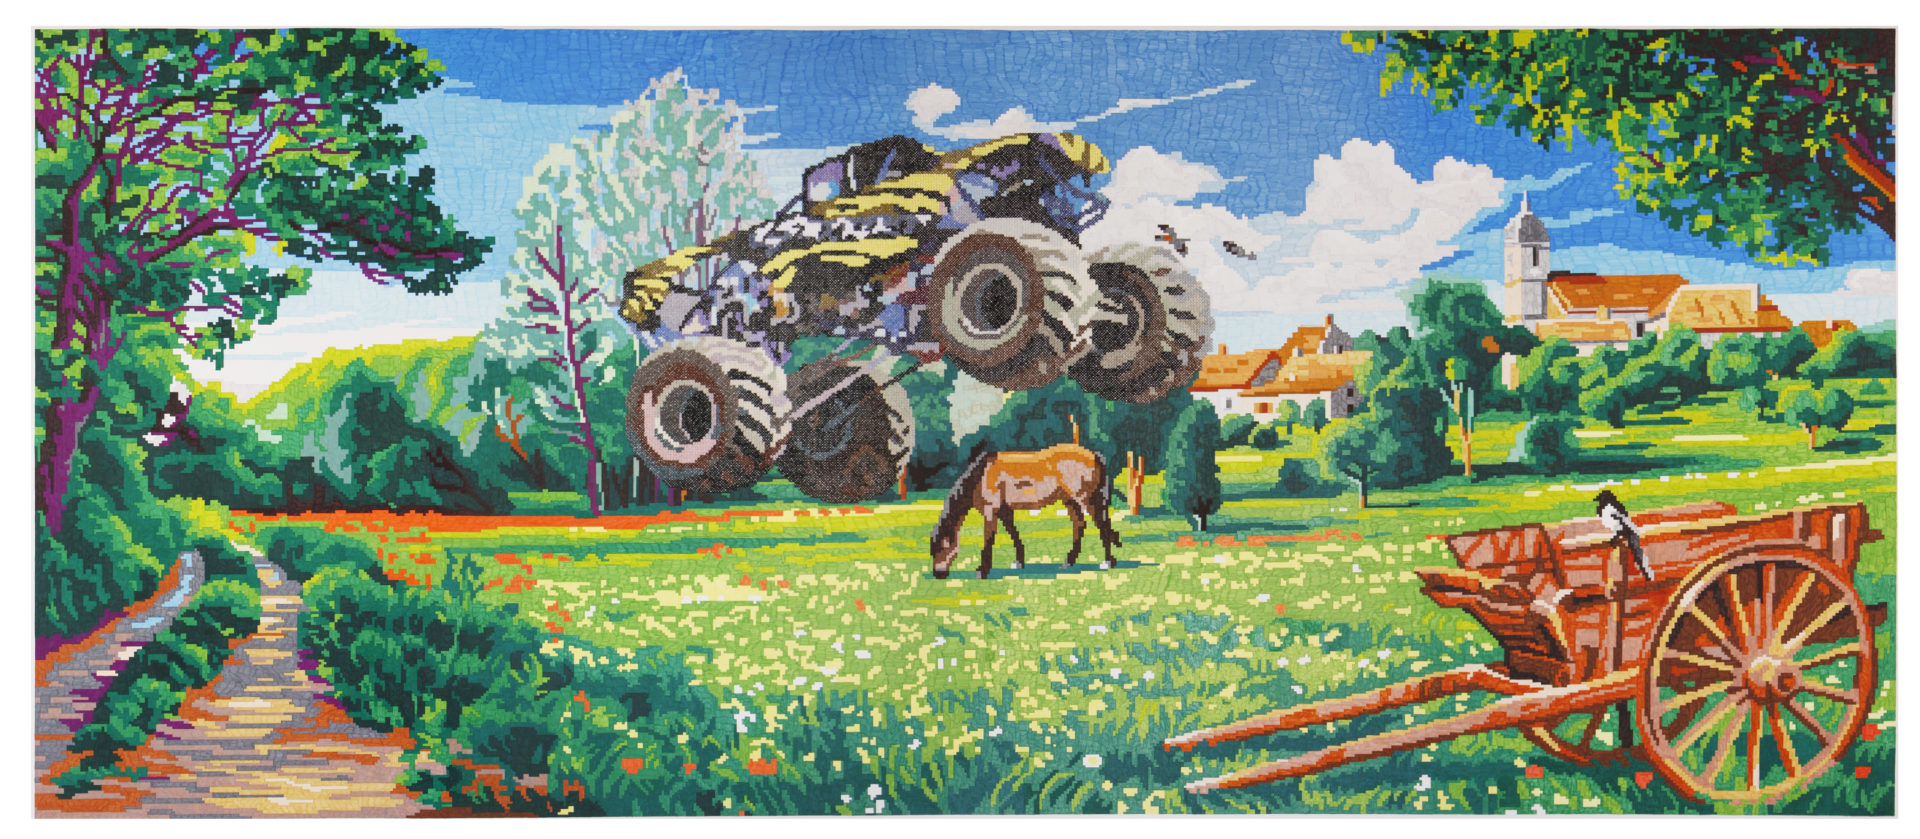 Truck, feutres et broderie sur papier, 270 x 114 cm, 2016